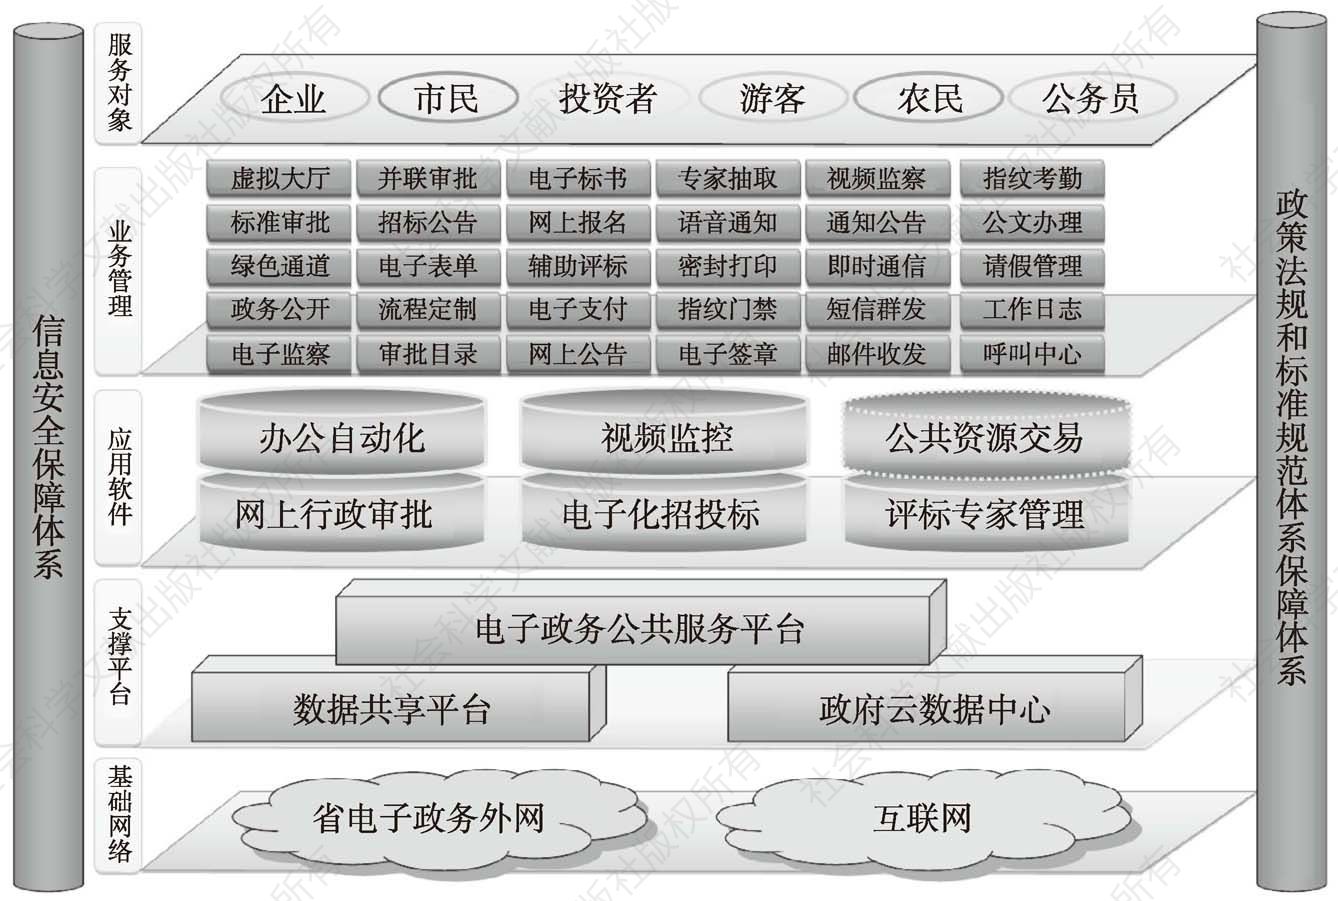 图1 海南省政务中心电子政务体系架构示意